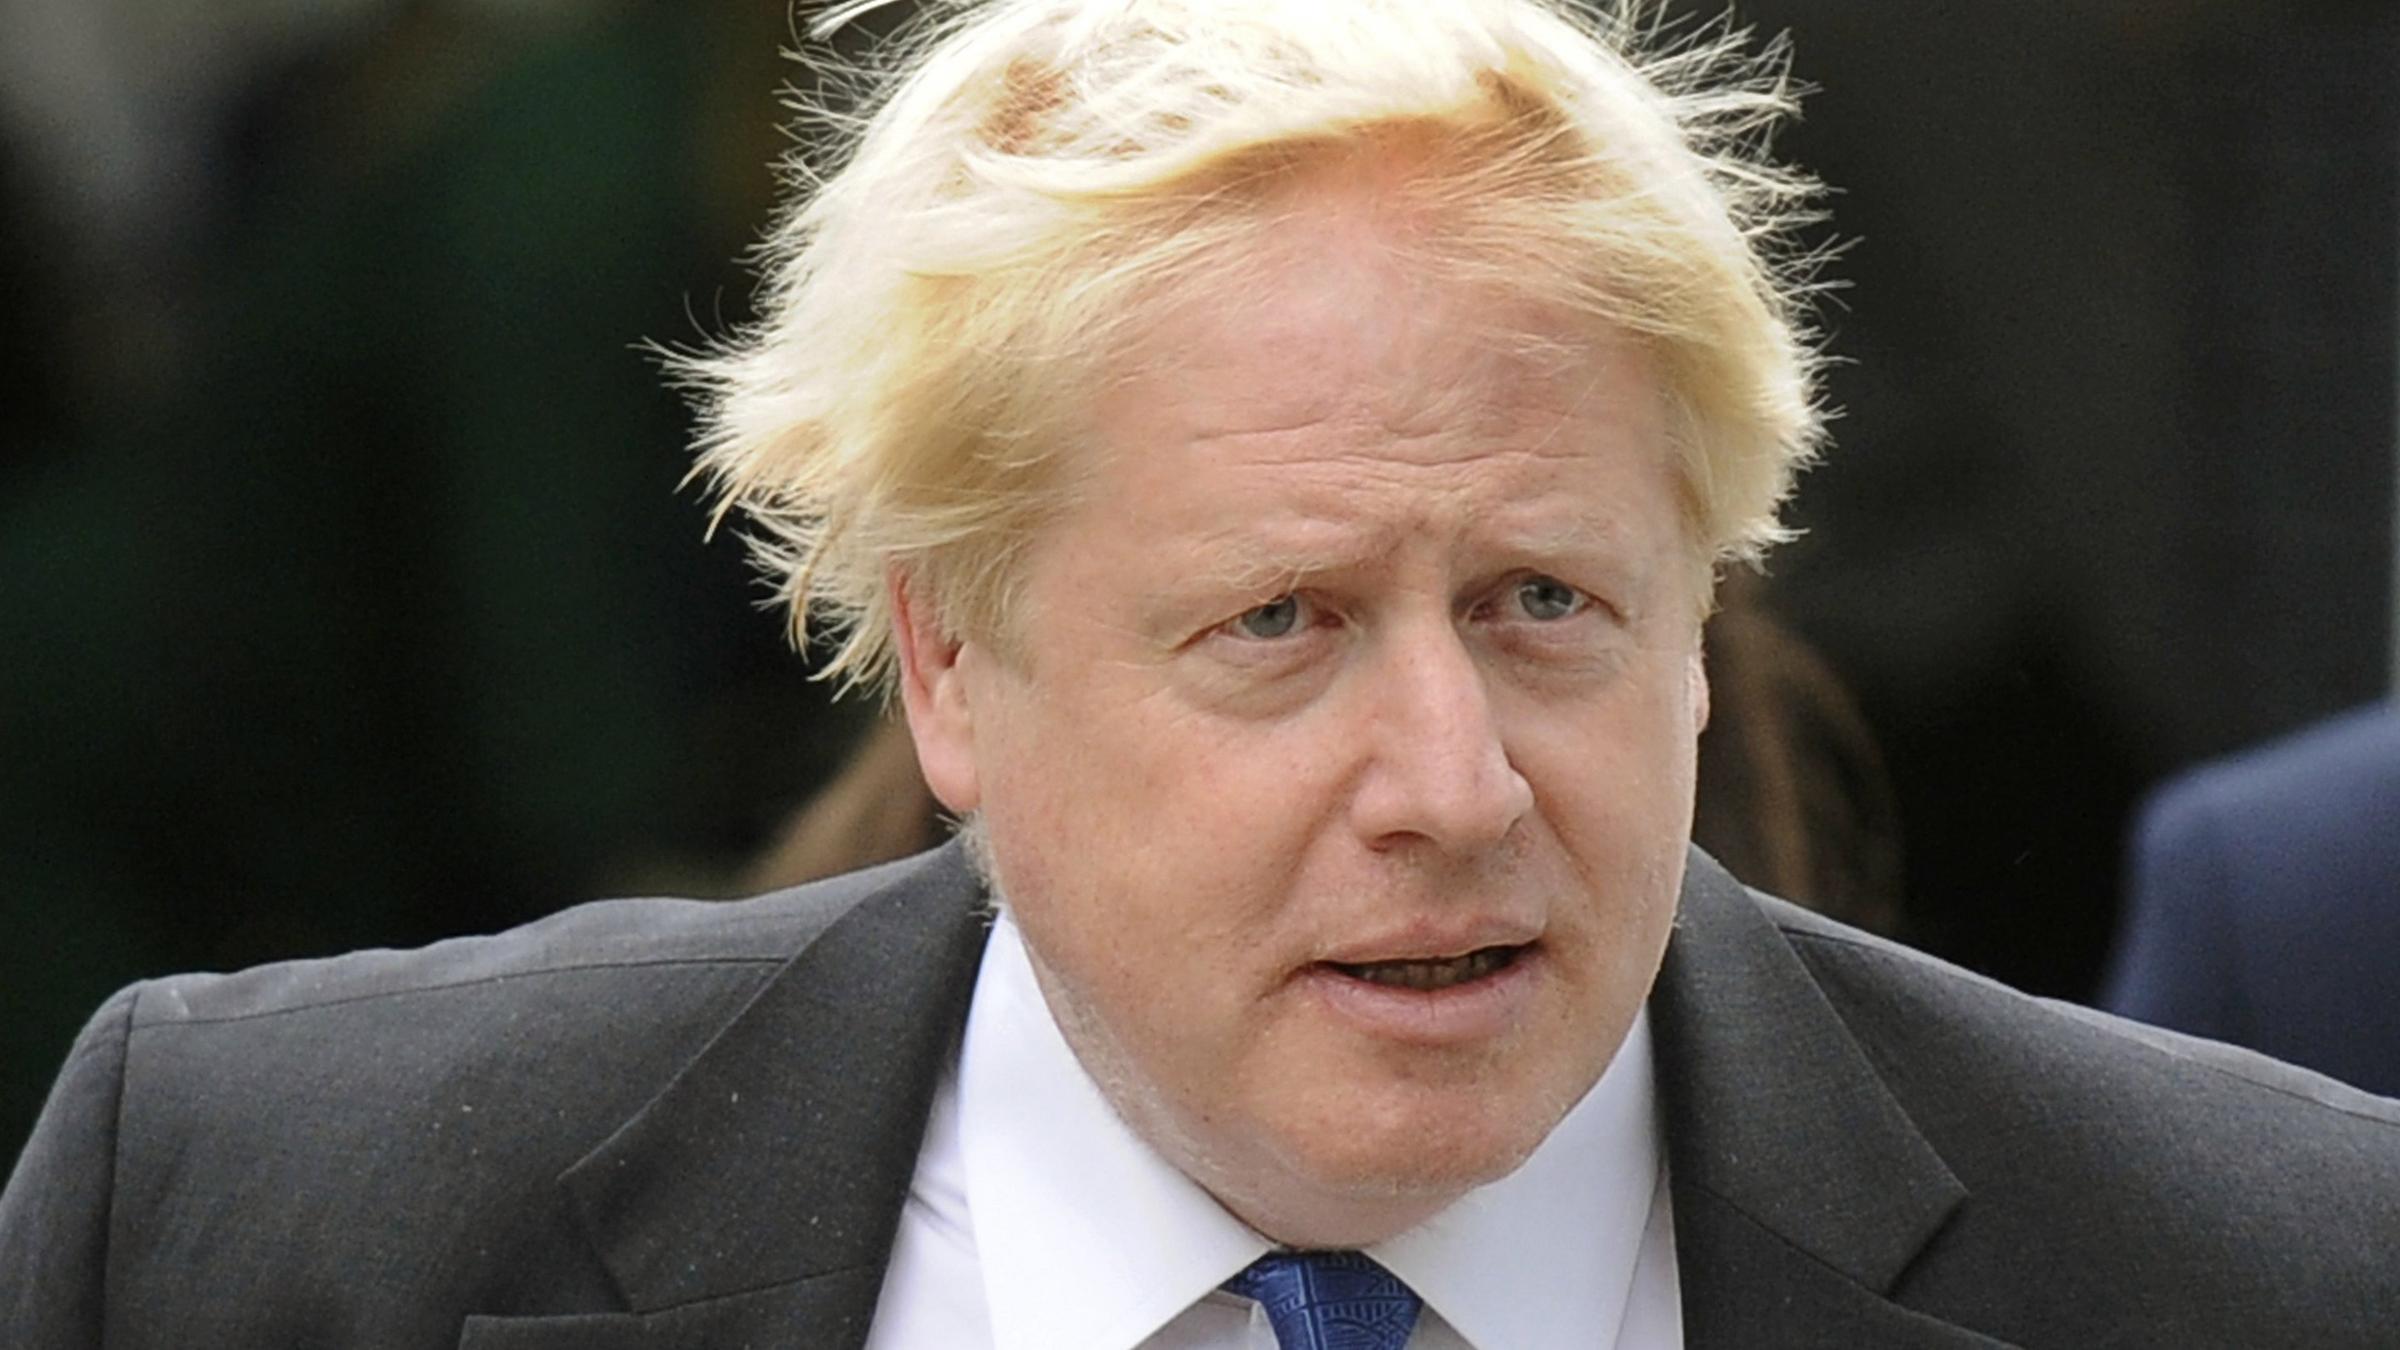 Angebliche Brexit Lugen Doch Kein Prozess Gegen Boris Johnson Zdfheute